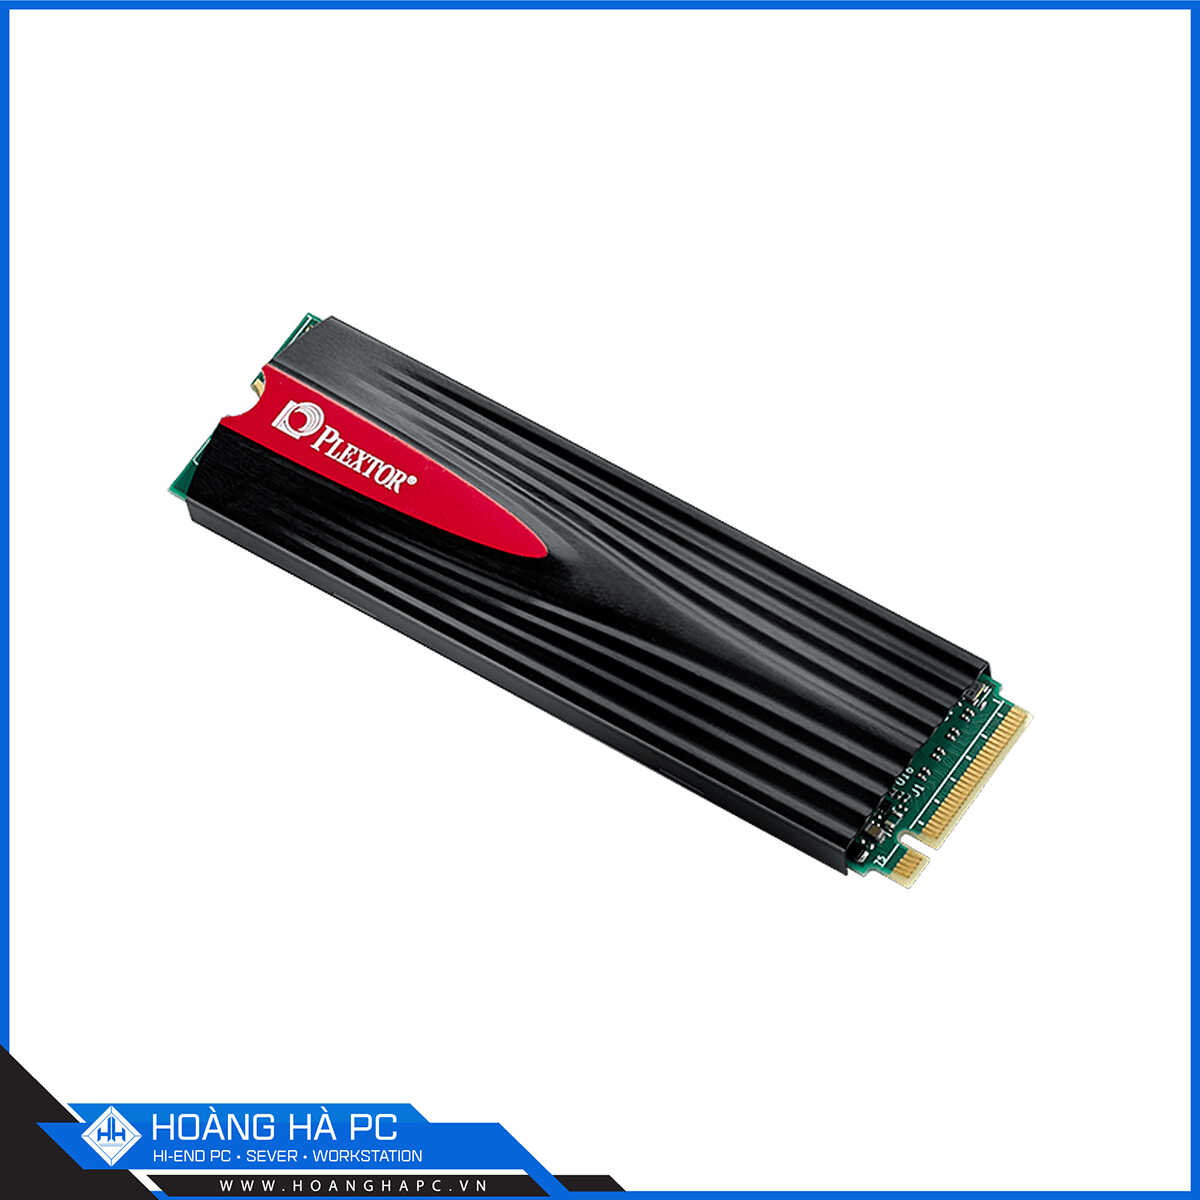 SSD Plextor PX-512M9PeG 512GB M.2 2280 PCIe